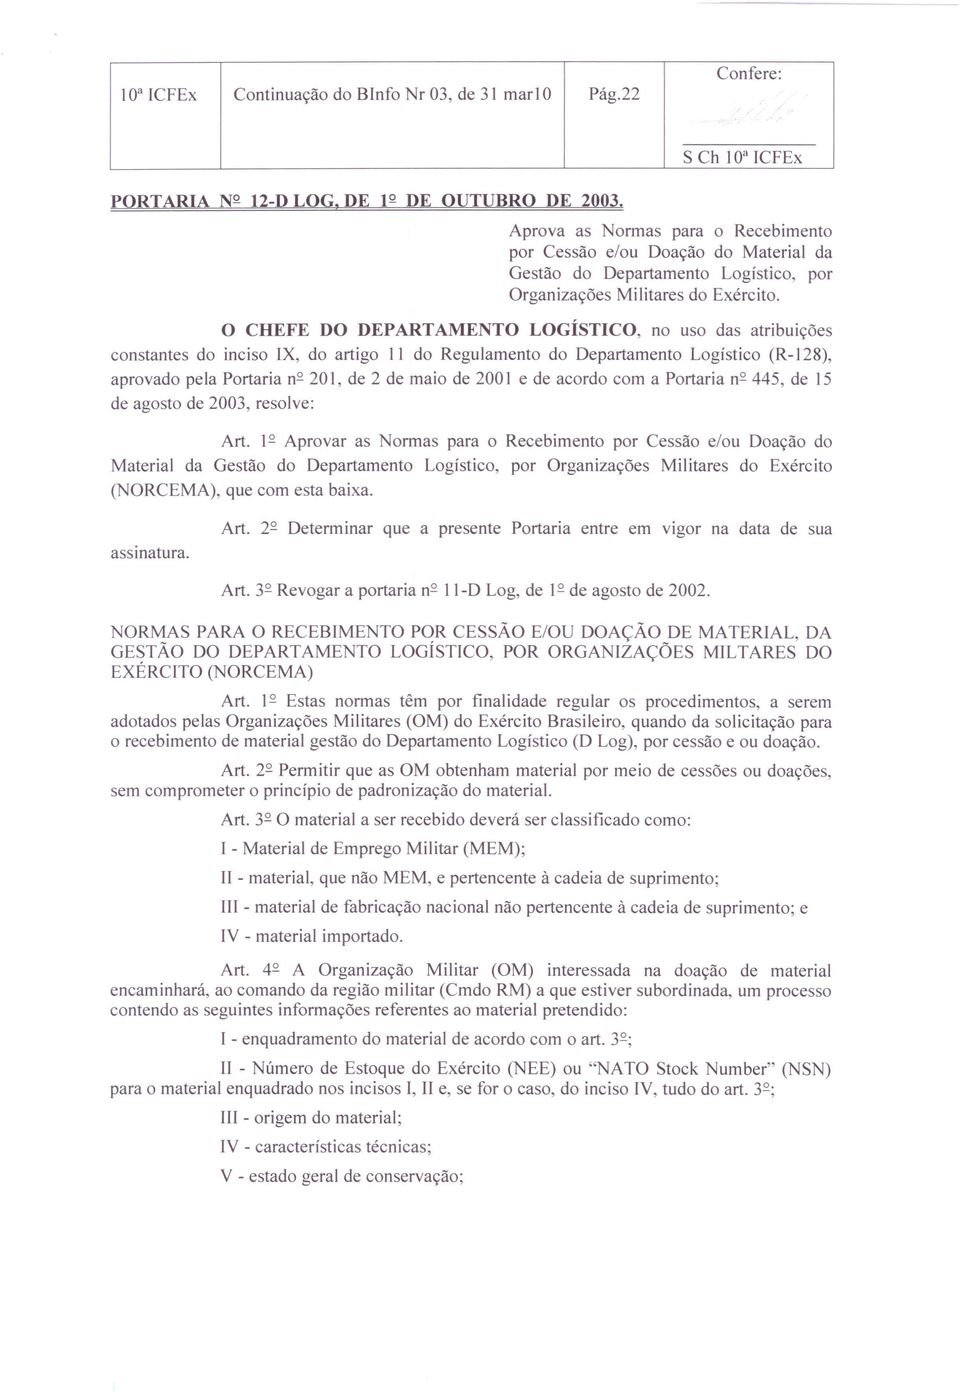 O CHEFE DO DEPARTAMENTO LOGÍSTICO, no uso das atribuições constantes do inciso IX, do artigo 11 do Regulamento do Departamento Logístico (R-128), aprovado pela Portaria n 2 201, de 2 de maio de 2001